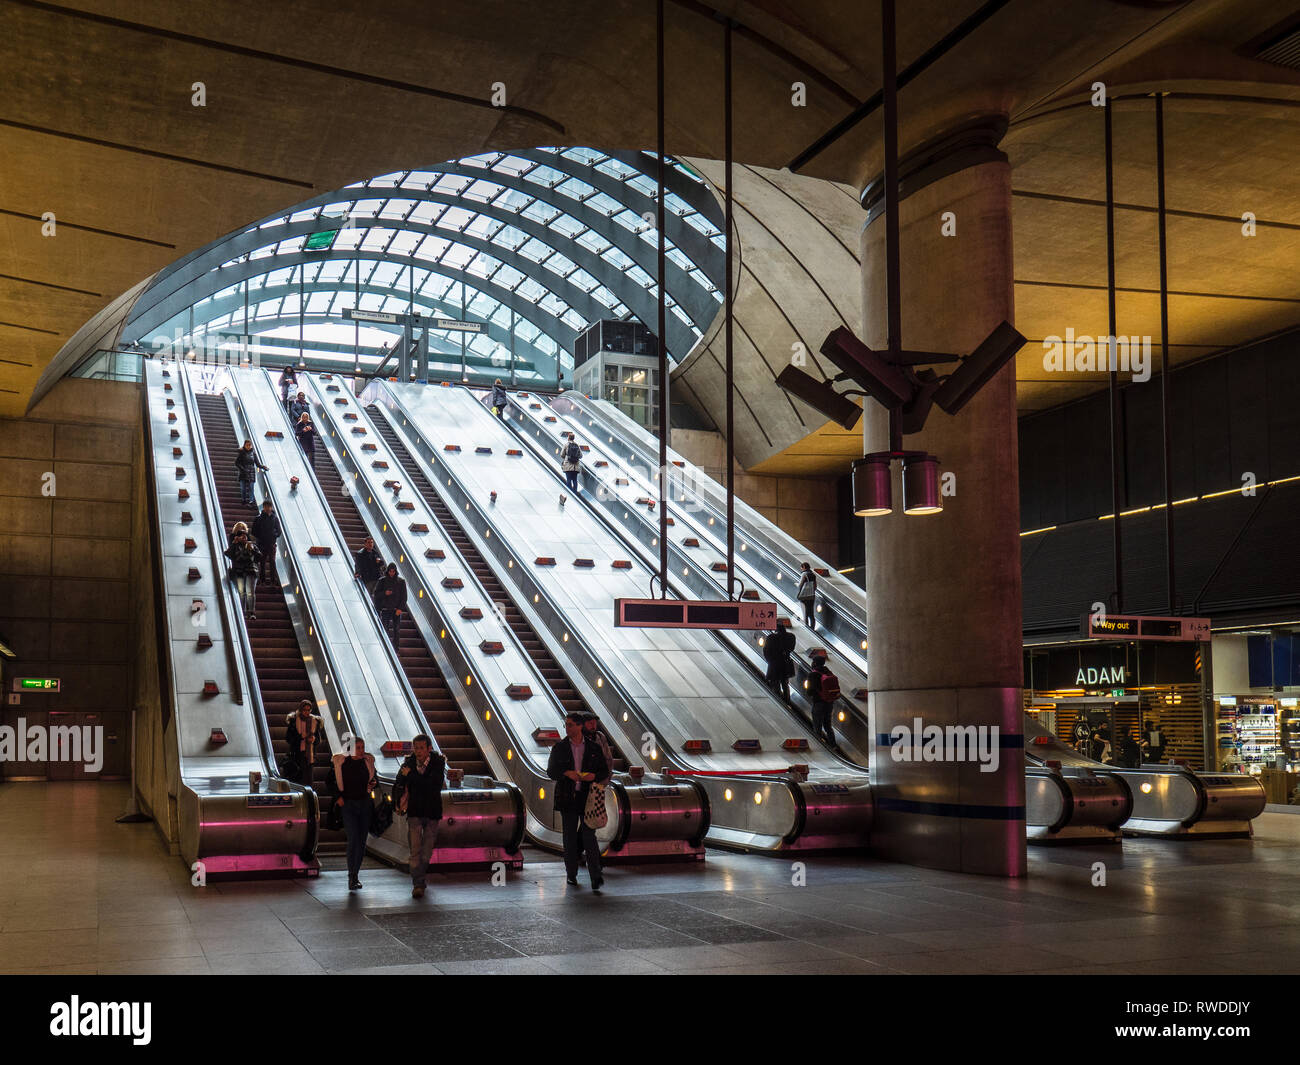 La station de métro de Canary Wharf Londres - la station de métro Canary Wharf sur la ligne Jubilee - architecte Sir Norman Foster a ouvert 1999 Banque D'Images